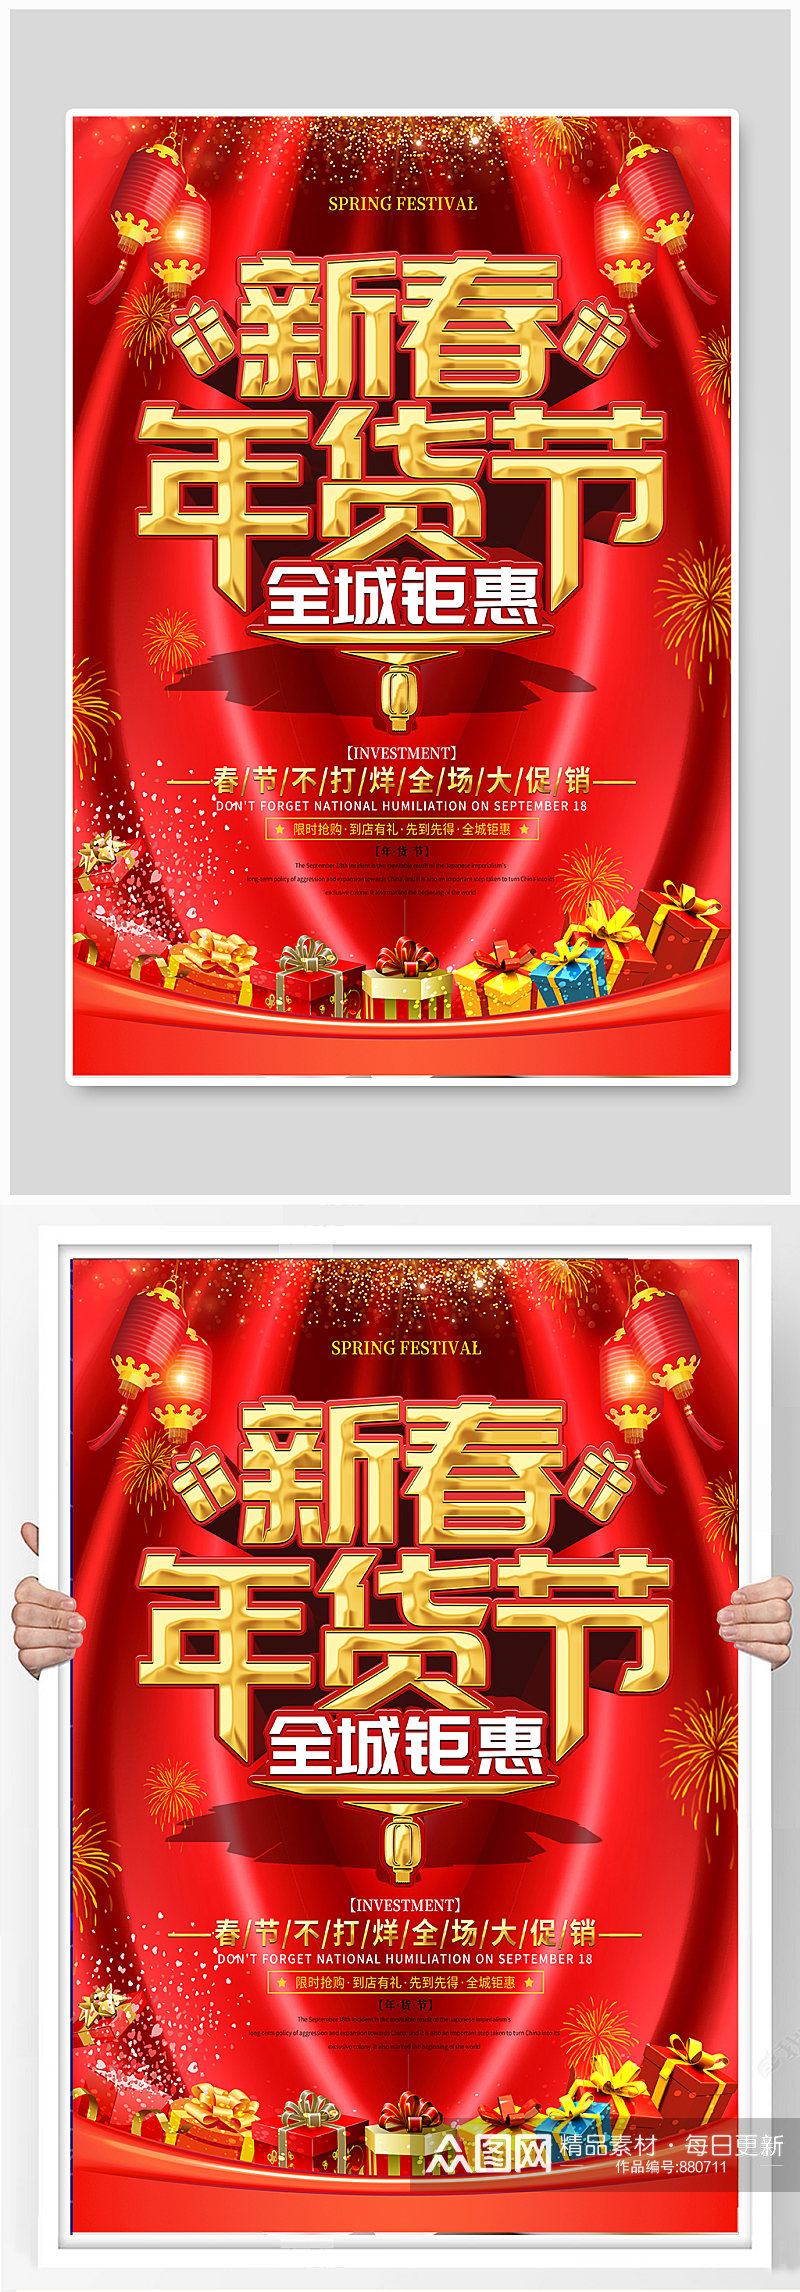 大气喜庆年货节促销宣传海报素材